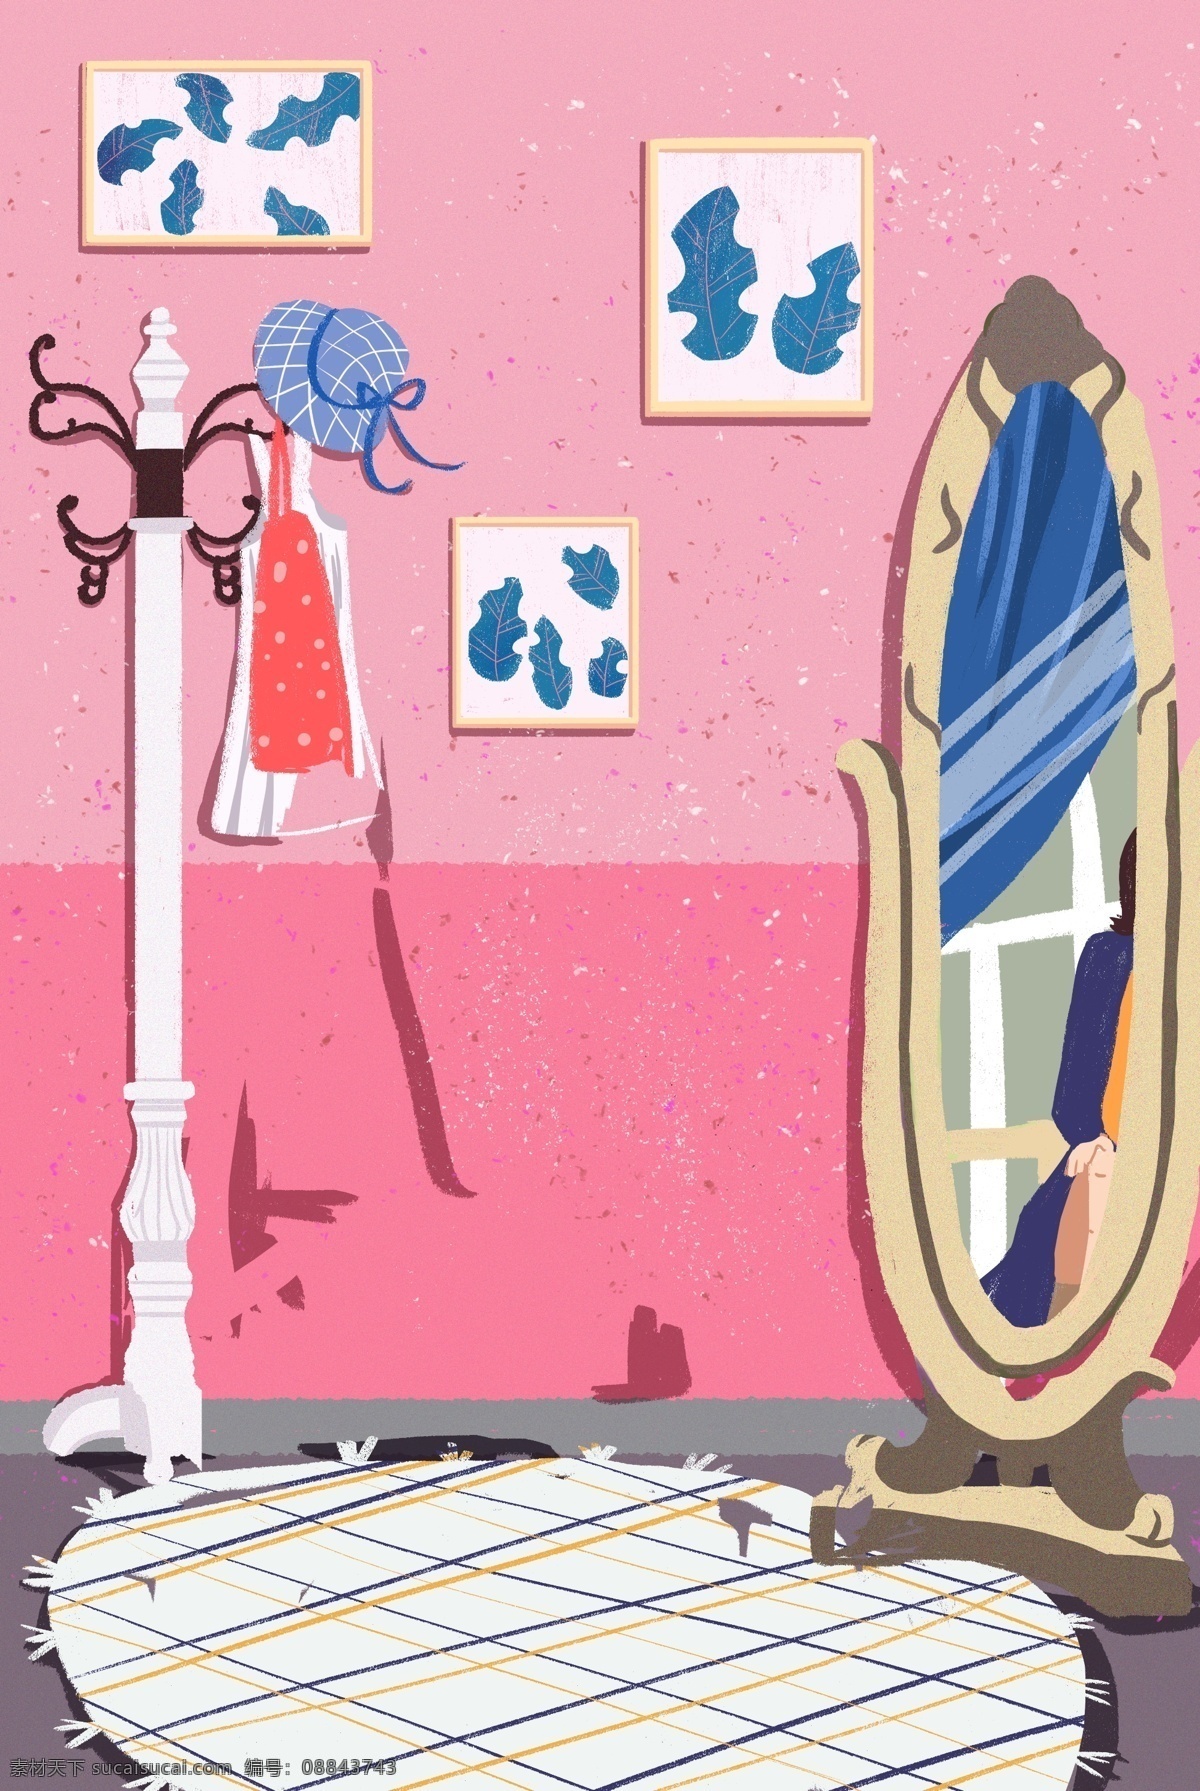 卡通 害 居 镜子 衣架 免 抠 图 卡通家具 衣服 相框 白色的地毯 粉红色的墙壁 沙发 免抠图